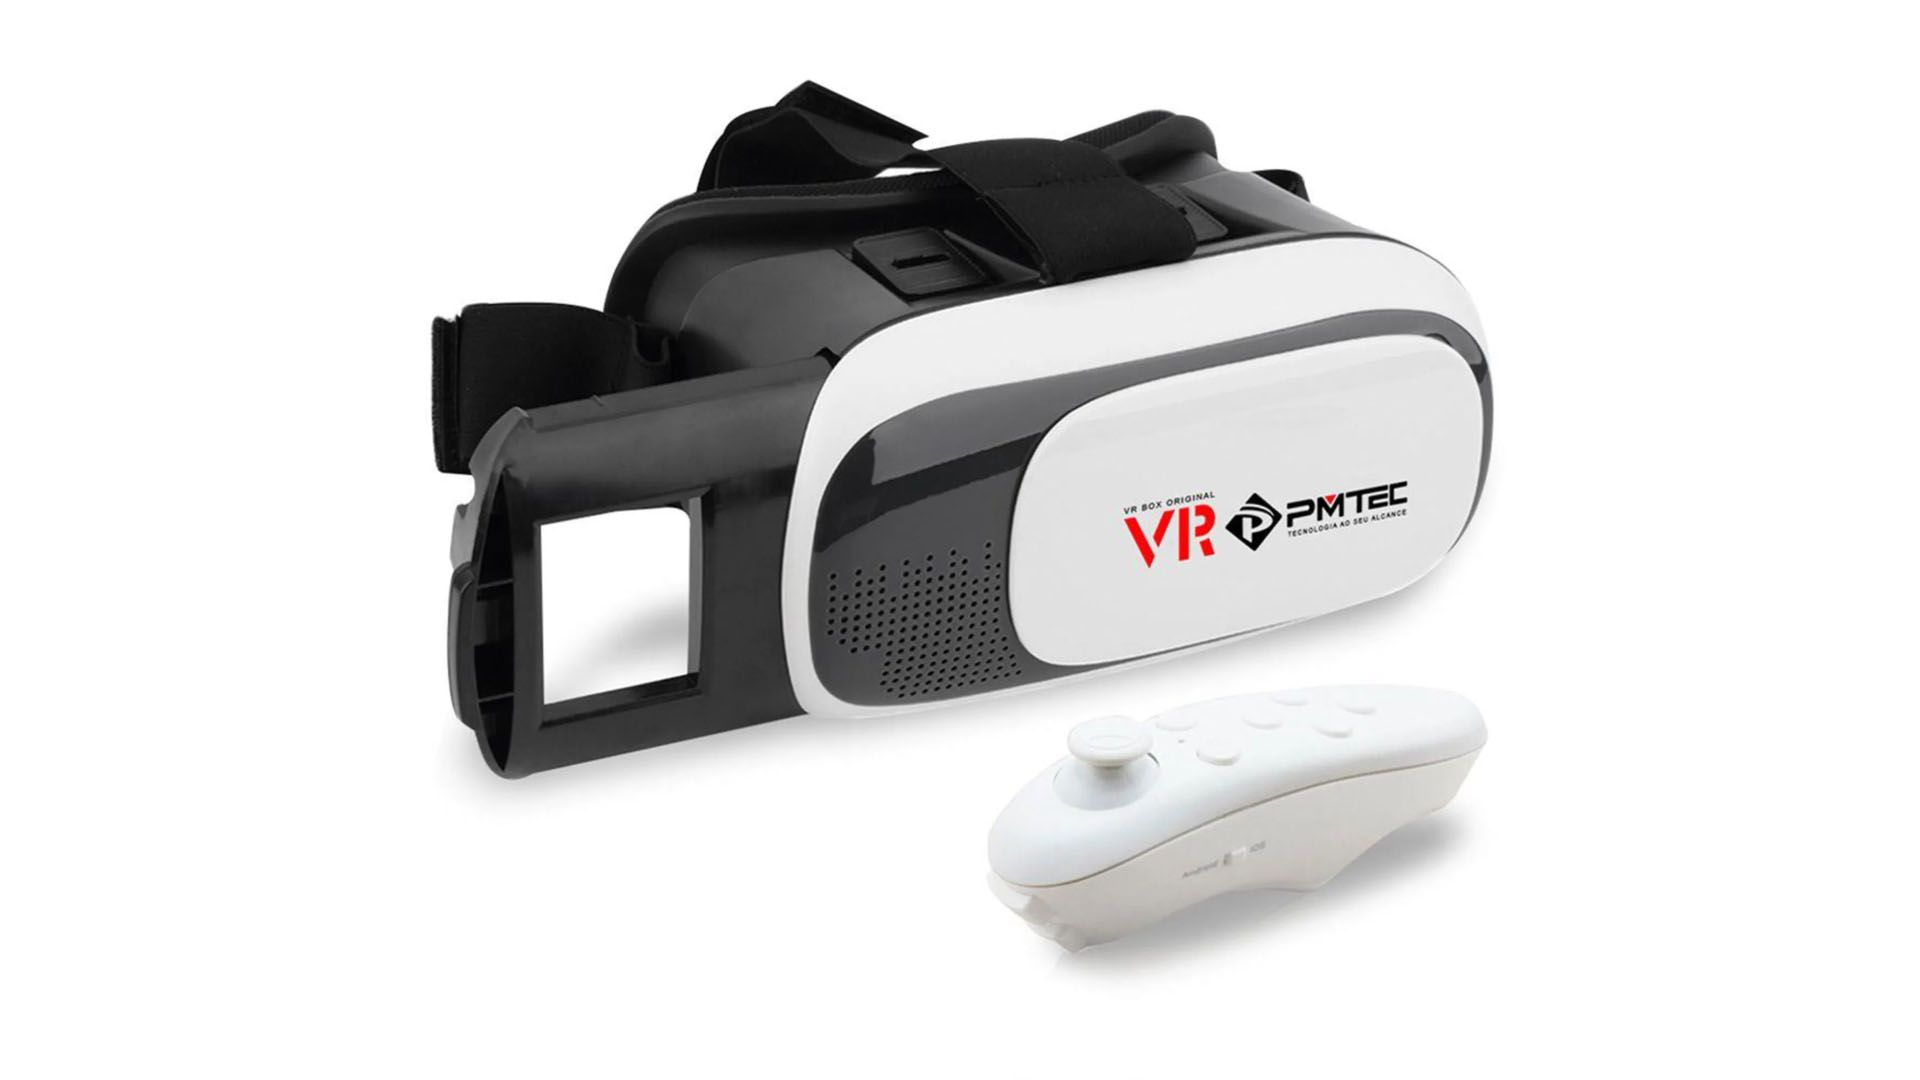 Óculos de realidade virtual da PMTEC. (Foto: Divulgação/PMTEC)